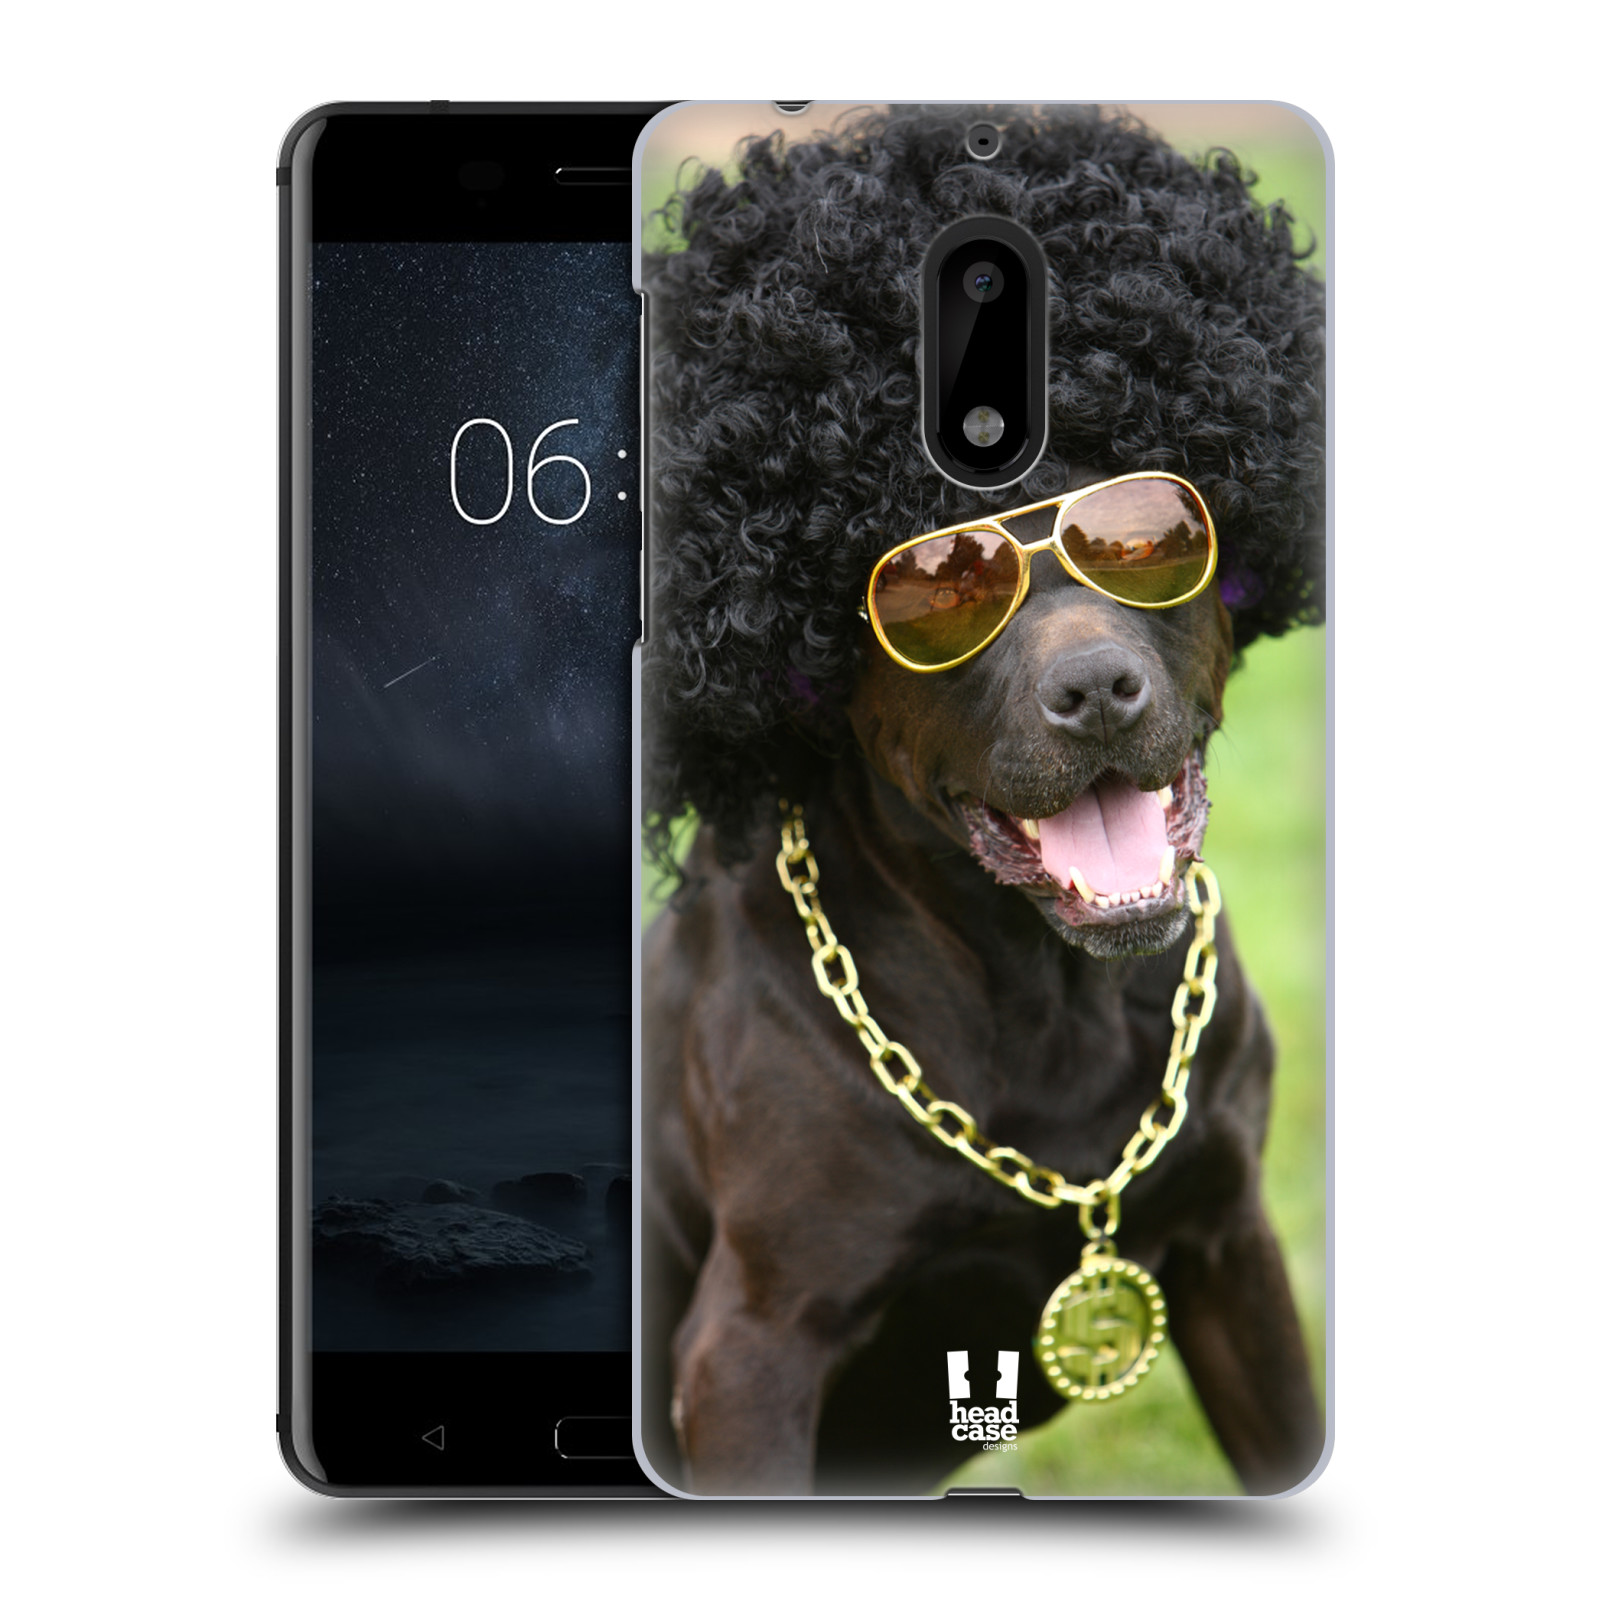 HEAD CASE plastový obal na mobil Nokia 6 vzor Legrační zvířátka pejsek boháč